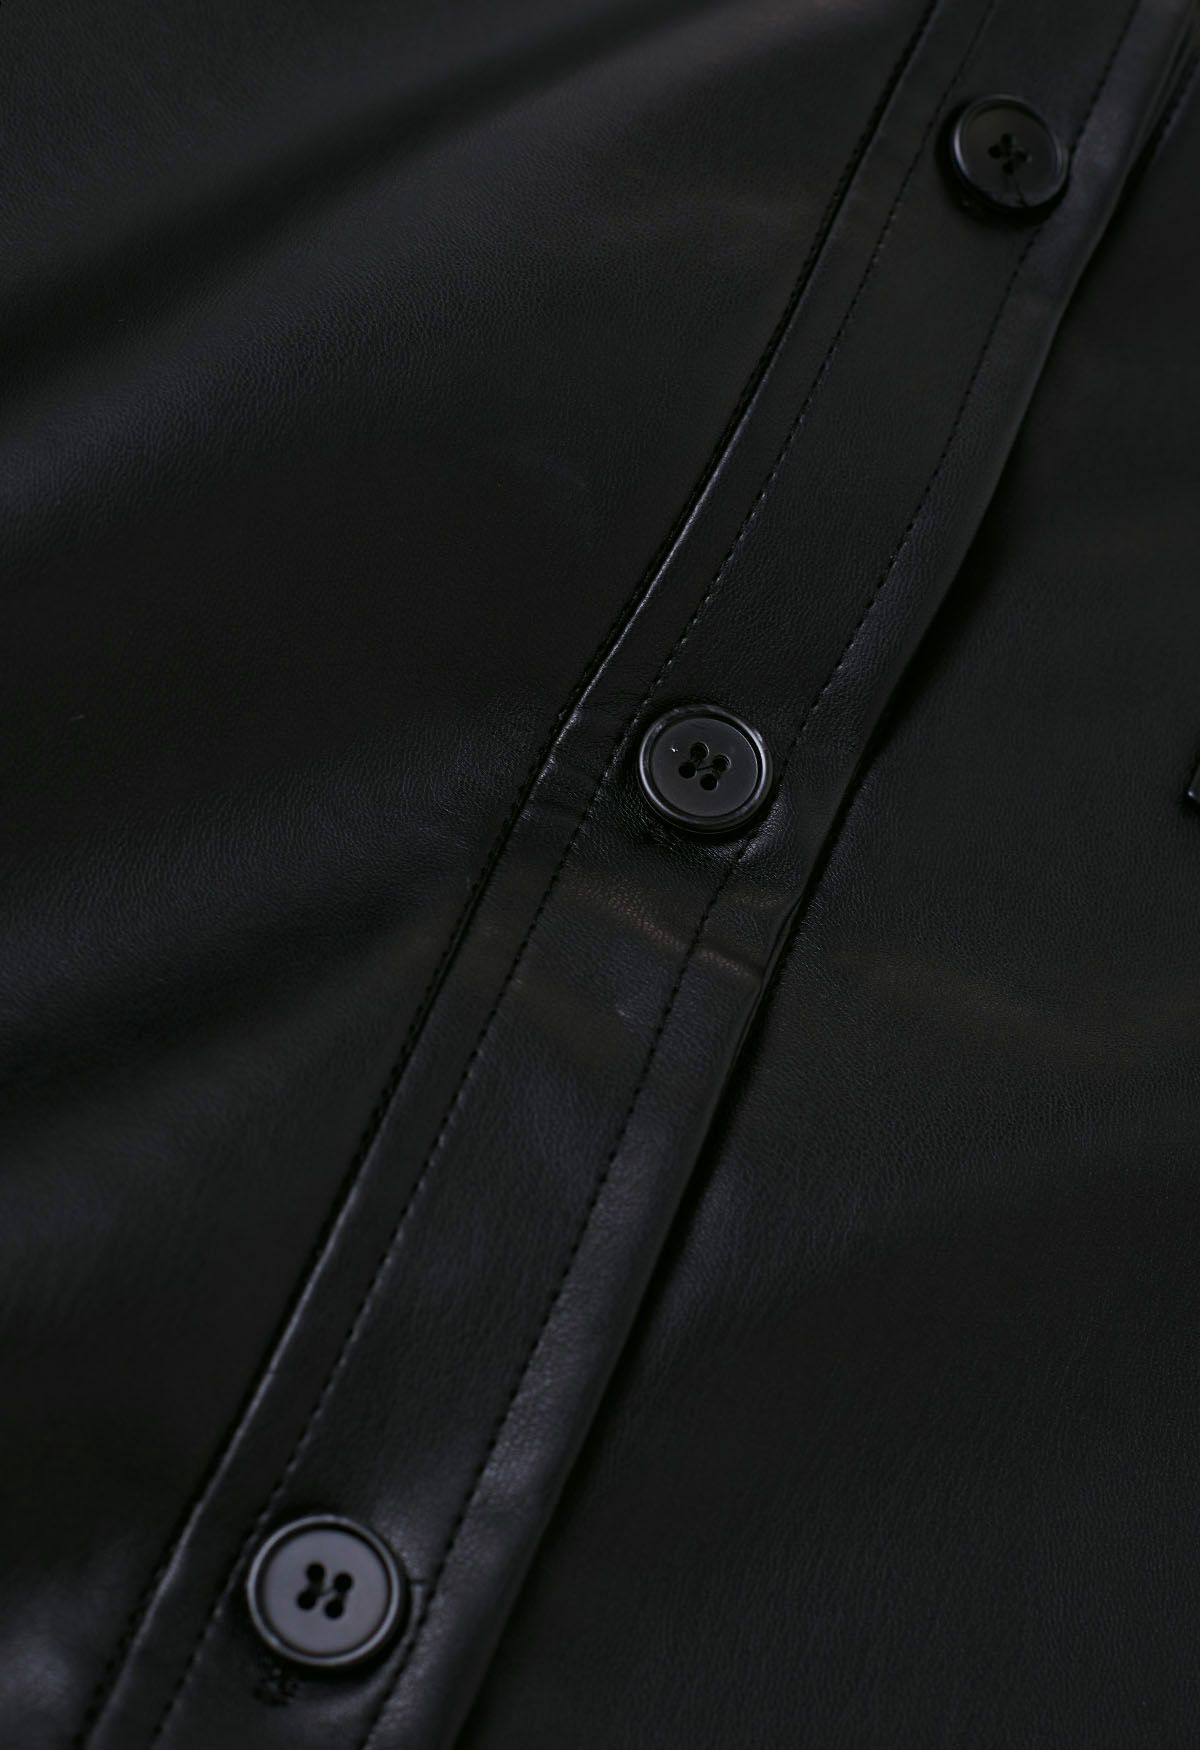 Chaqueta estilo camisa informal elegante de piel sintética en negro